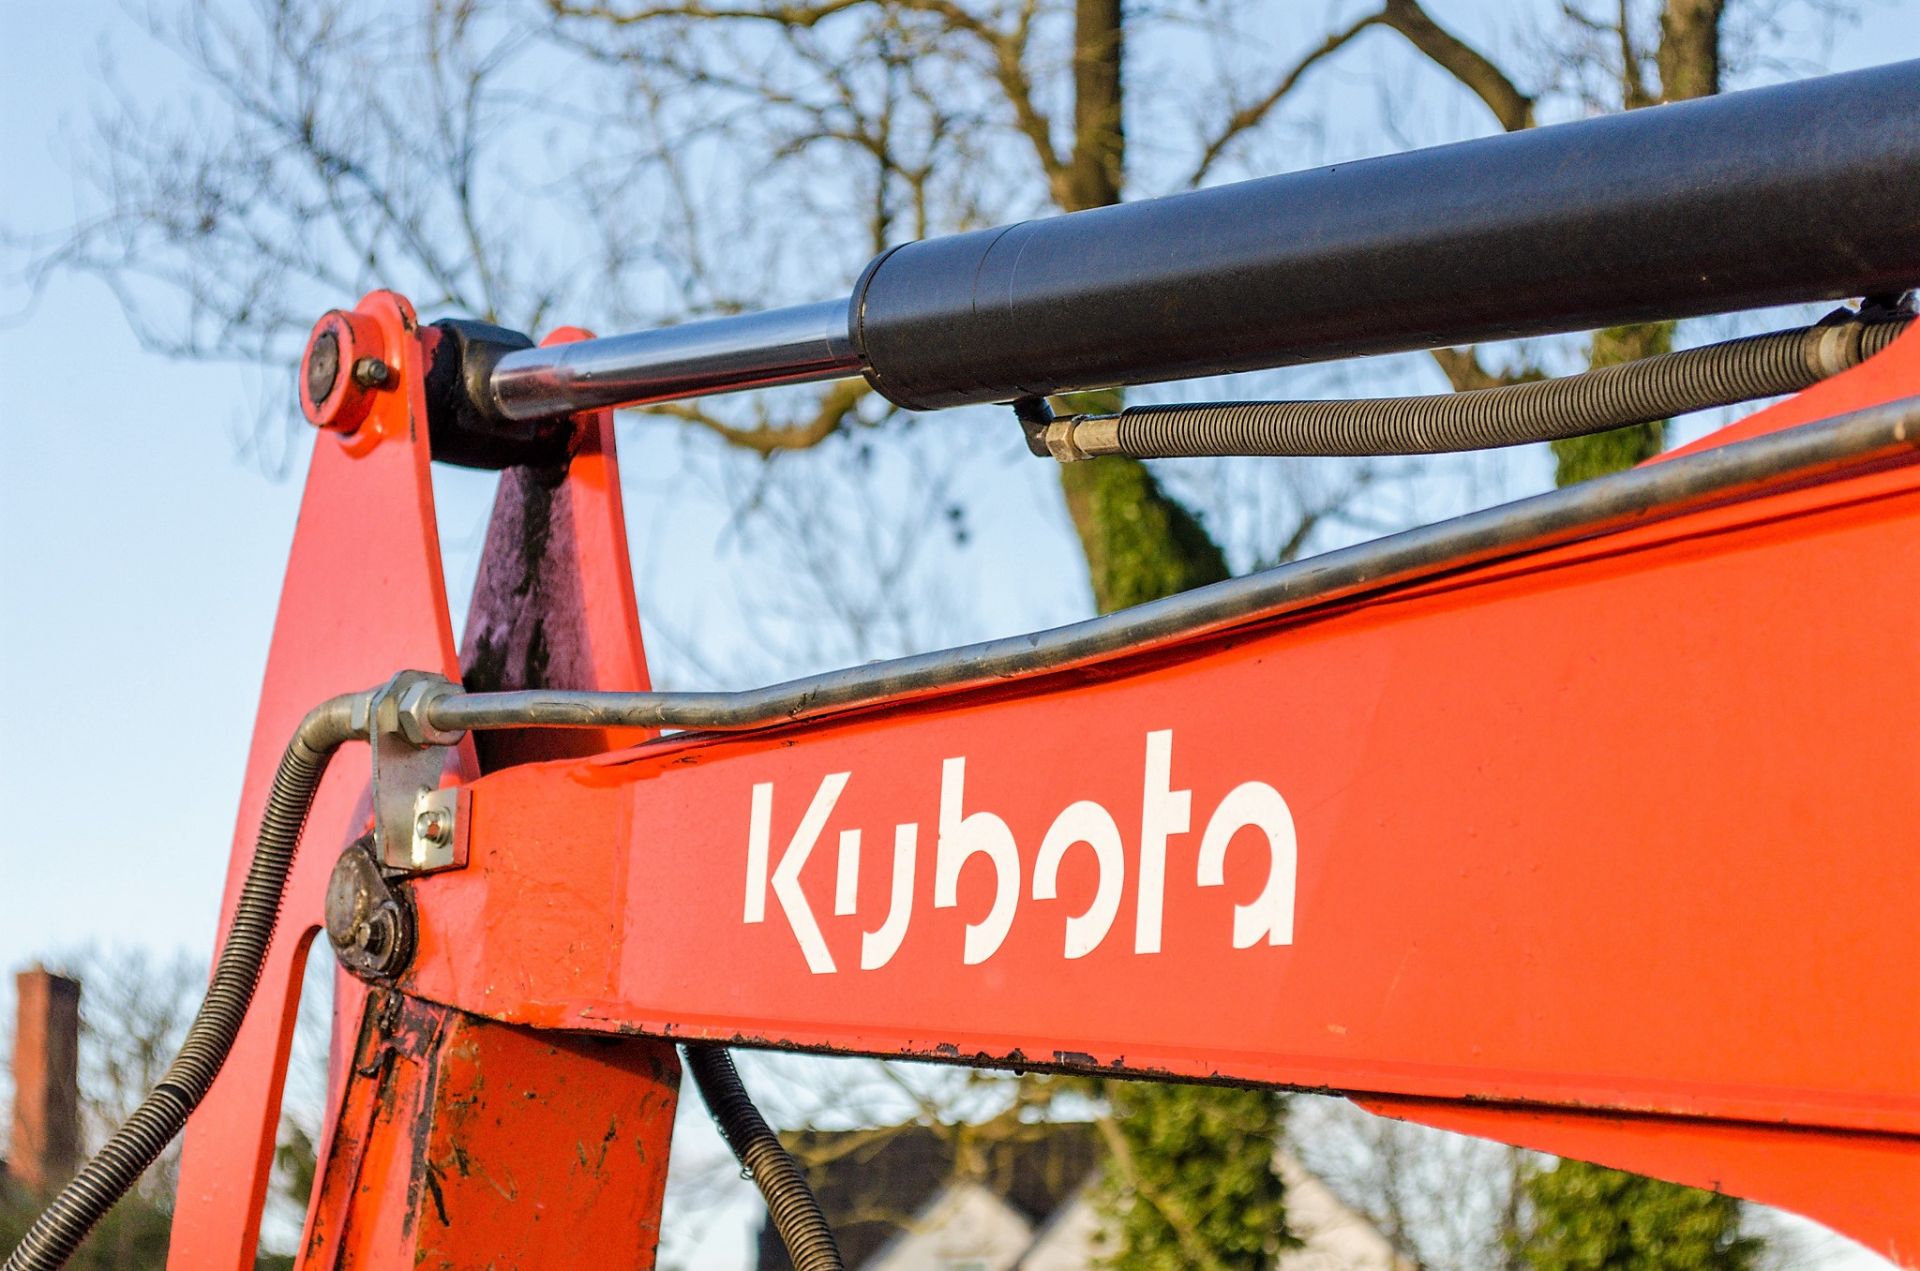 Kubota KX71-3 2.6 tonne rubber tracked excavator - Image 11 of 19